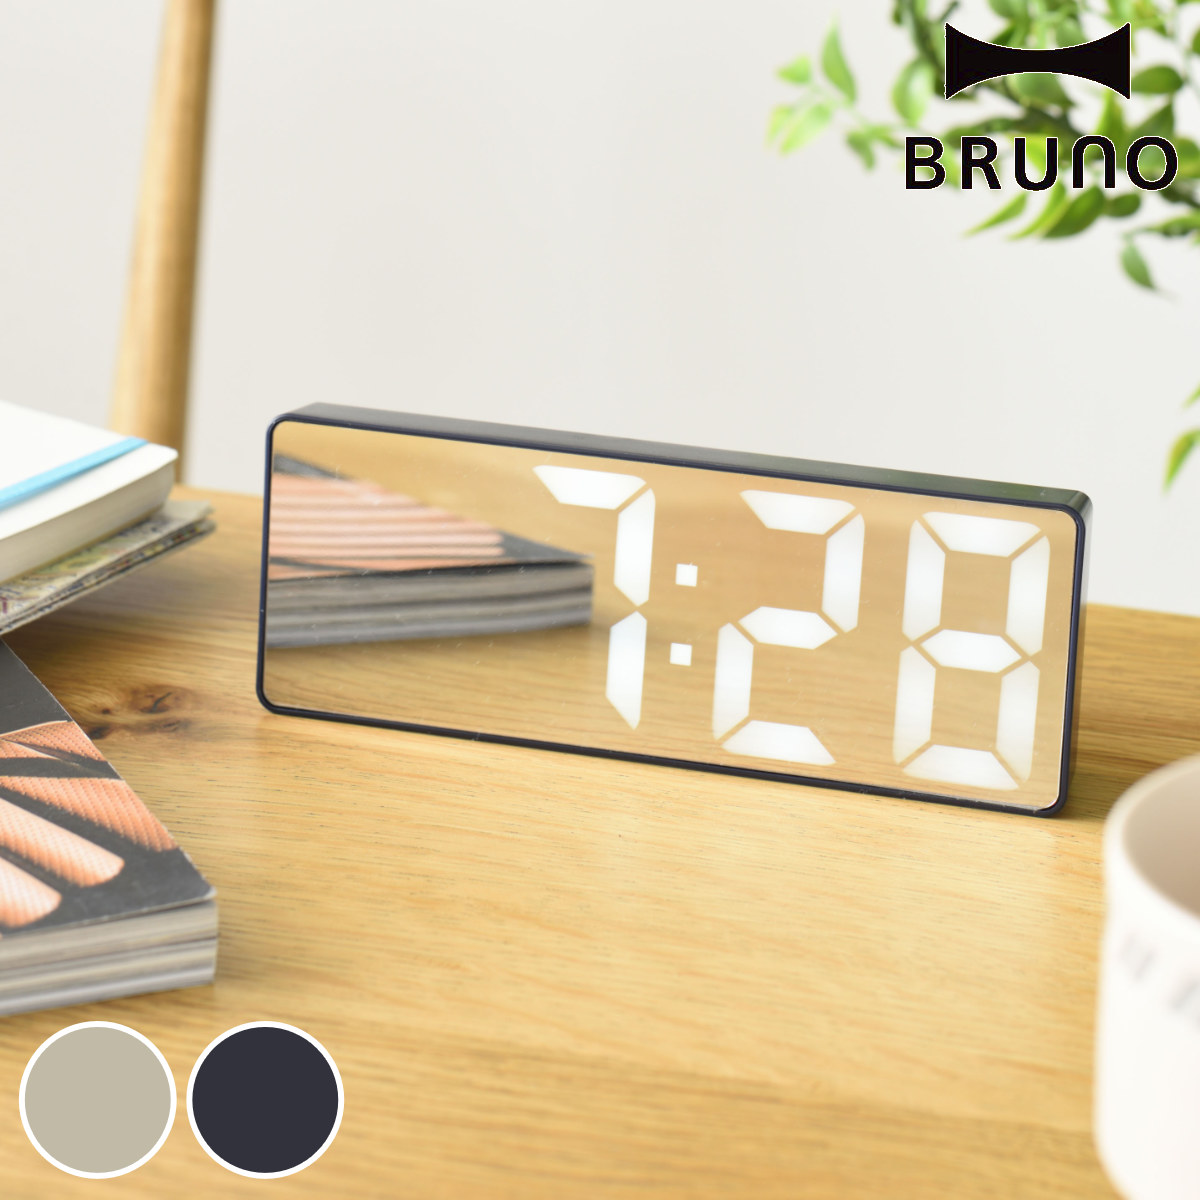 BRUNO LEDミラークロック デジタル時計 アラーム 温度